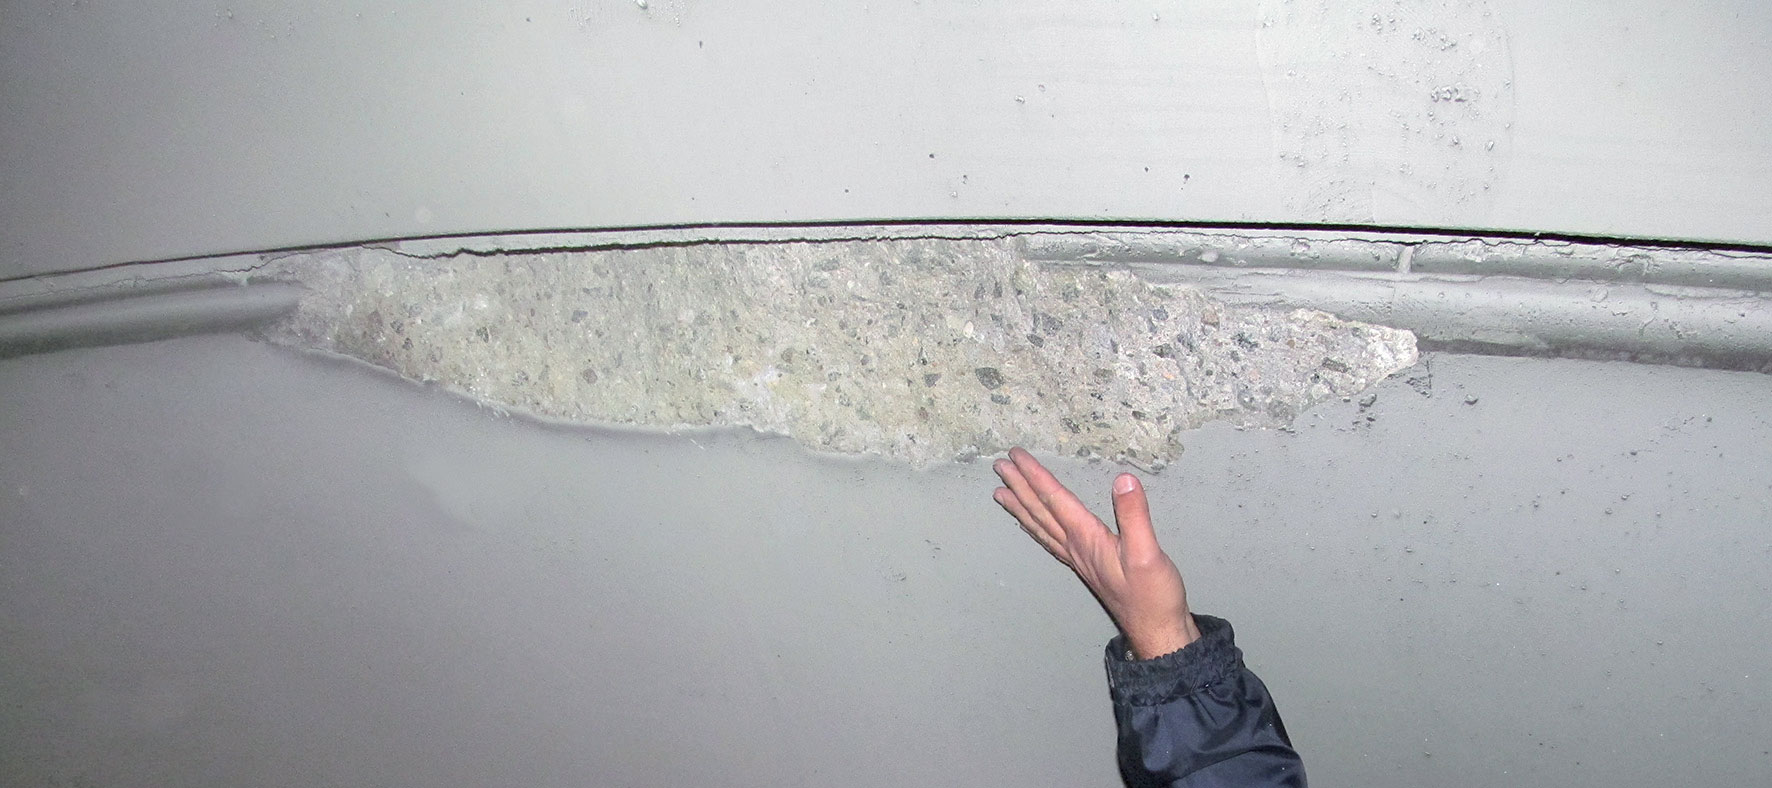 Obr. 3 Uvolněná část ostění u spáry mezi bloky betonáže (Foto: V. Petráš)